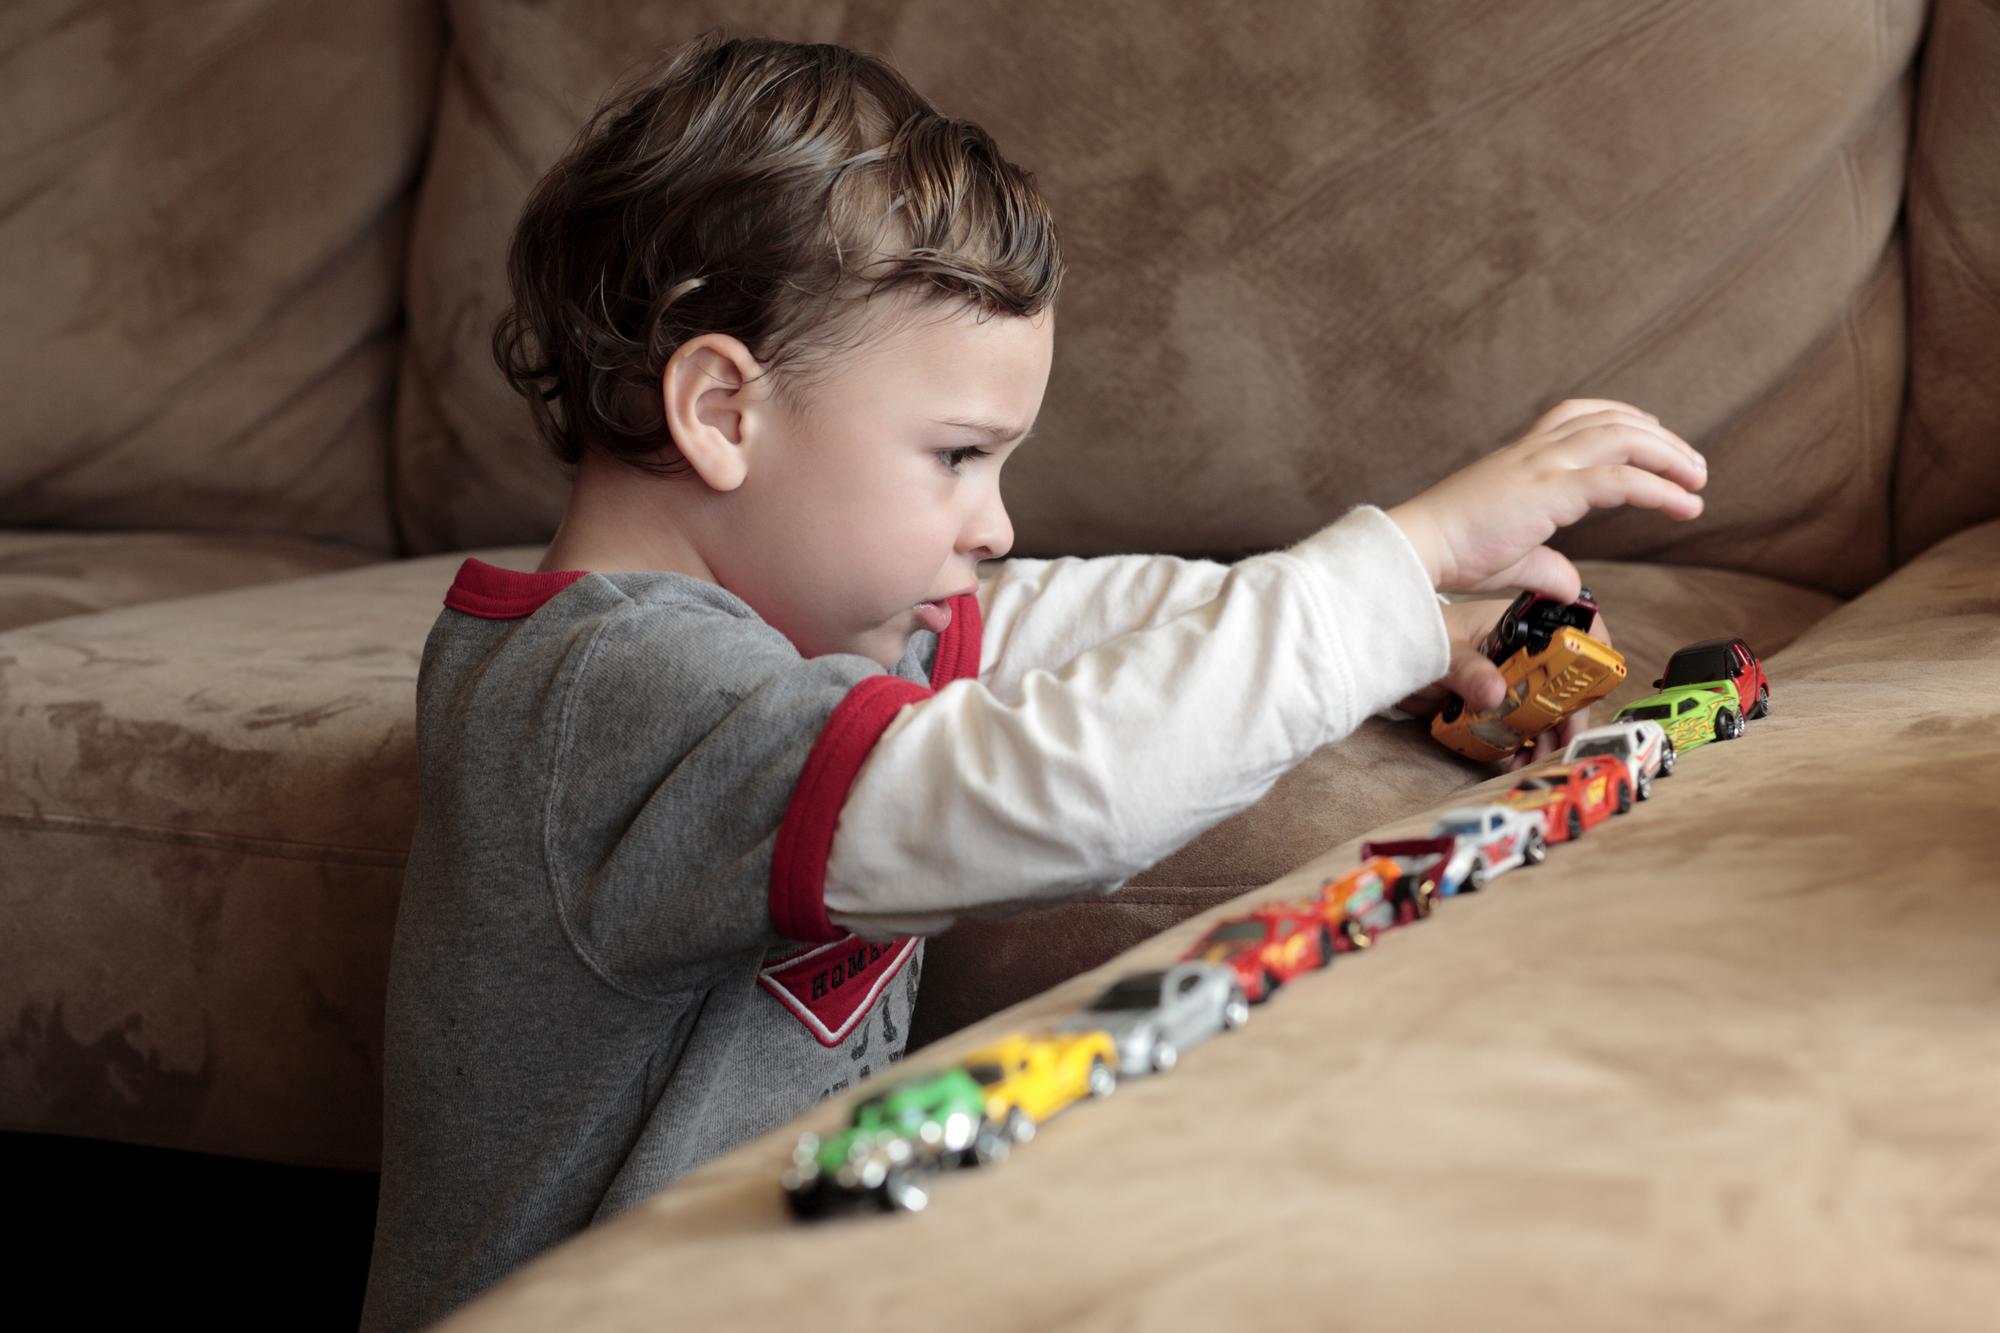 Mária učí deti s autizmom 20 rokov: Prečo sa nevedia hrať na lekárov, ale  stavajú hračky do radu? | Najmama.sk